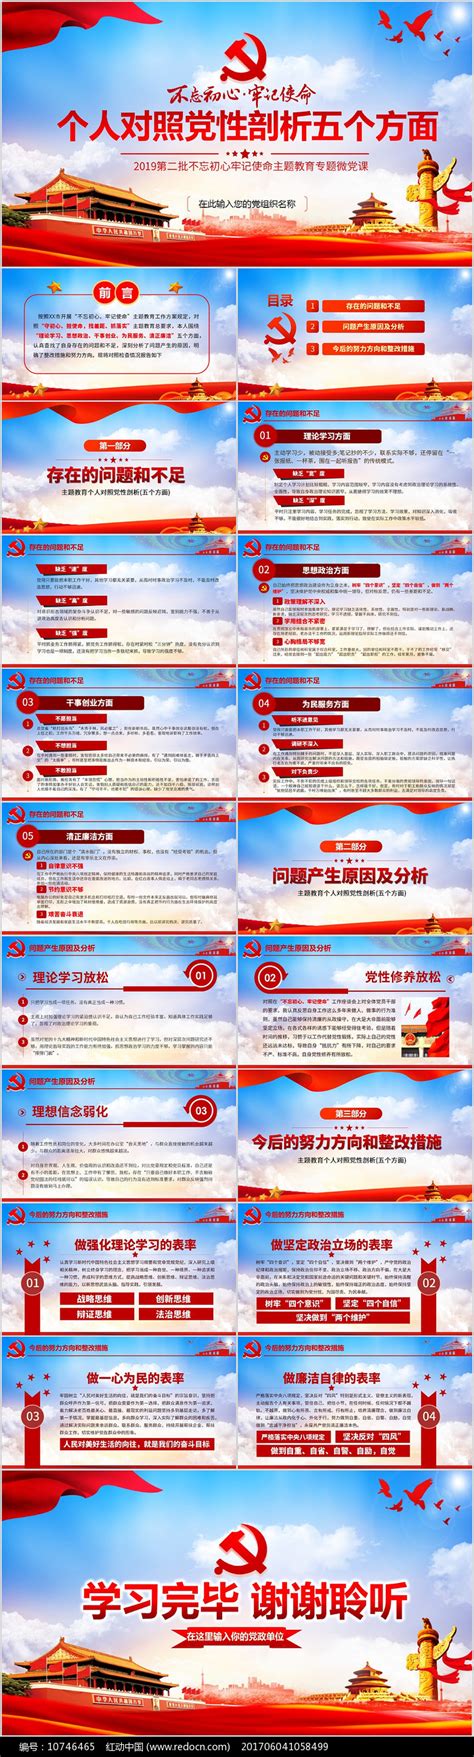 主题教育个人对照党性剖析五个方面PPT下载_红动中国